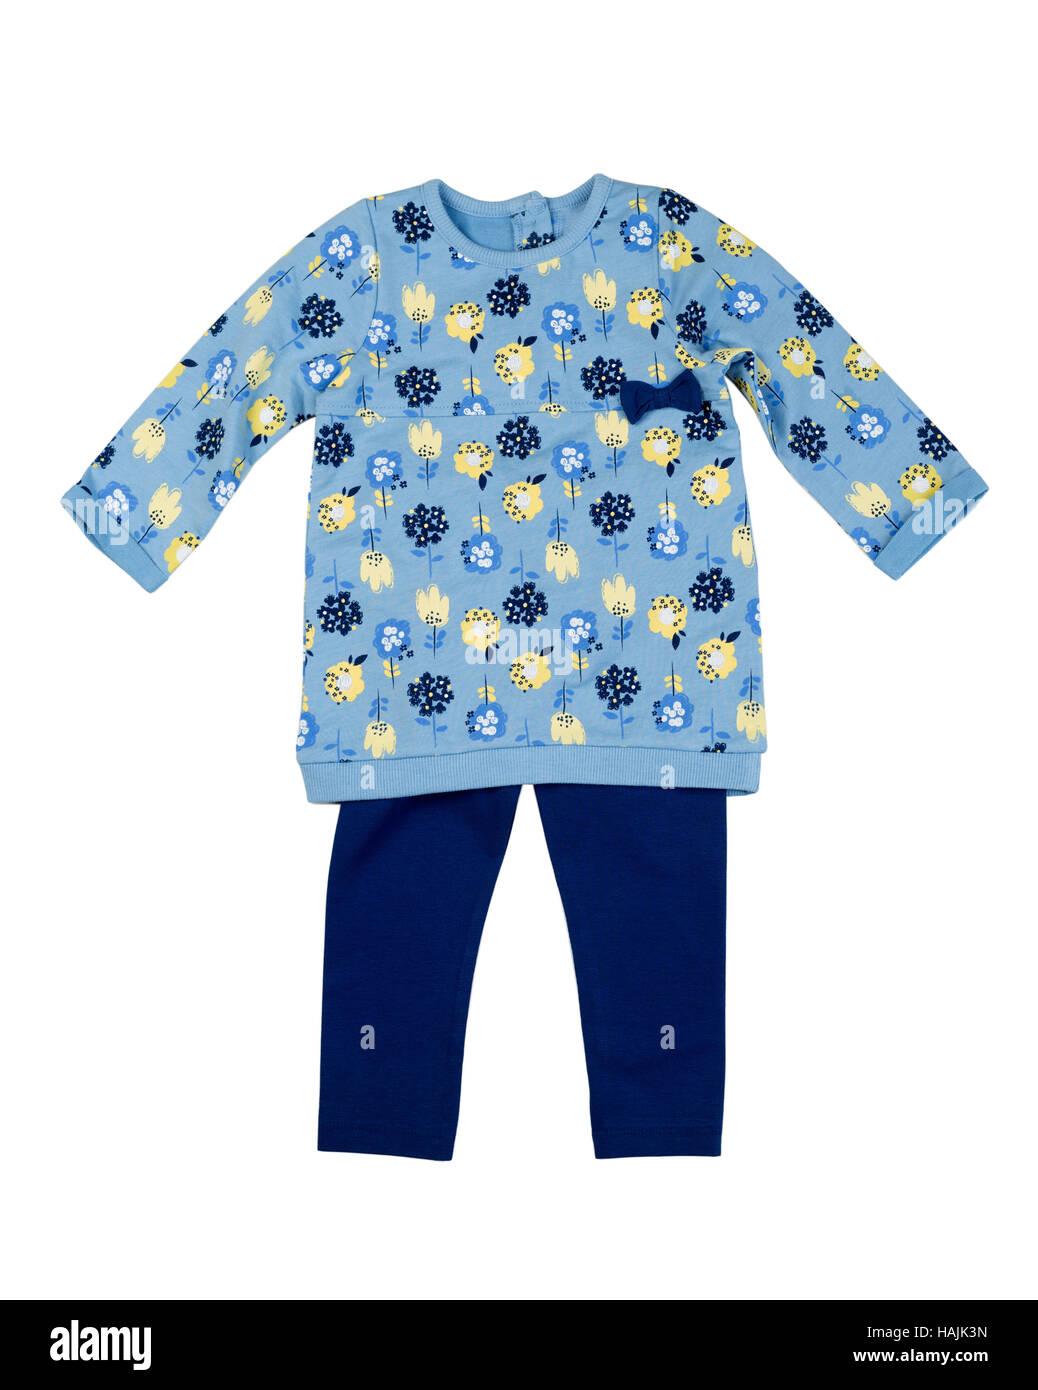 Baby clothing set. Blue jacket and pants. Isolate on white. Stock Photo